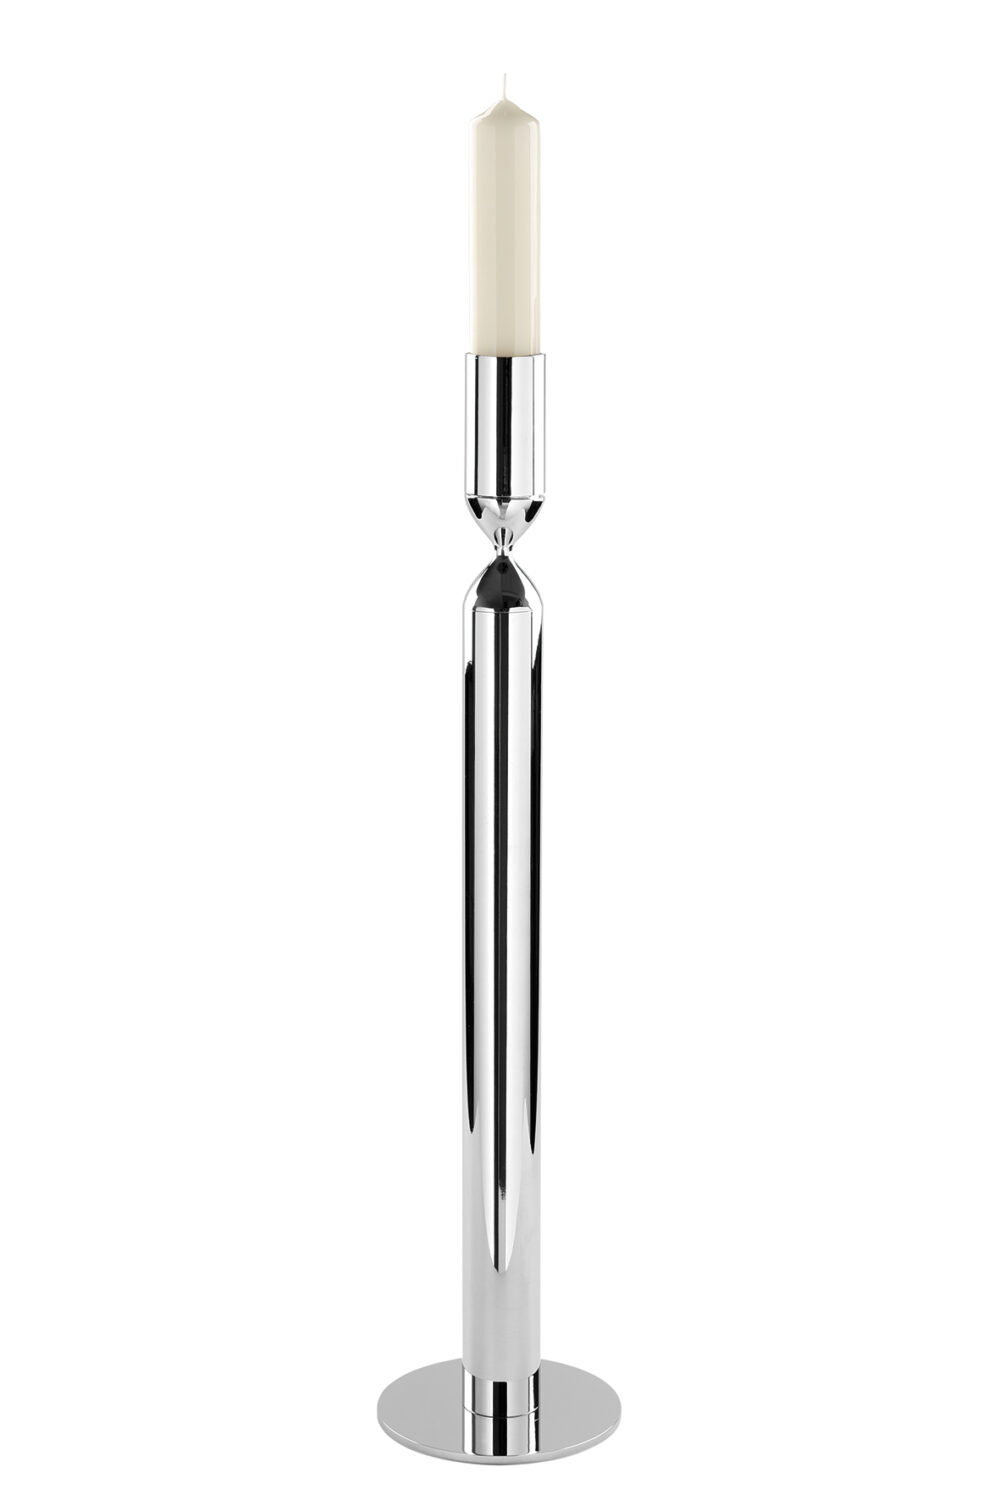 Fink Kerzenhalter Kerzenständer groß Titantkerze Juno silberfarben Höhe 60 cm Missforty Online kaufen